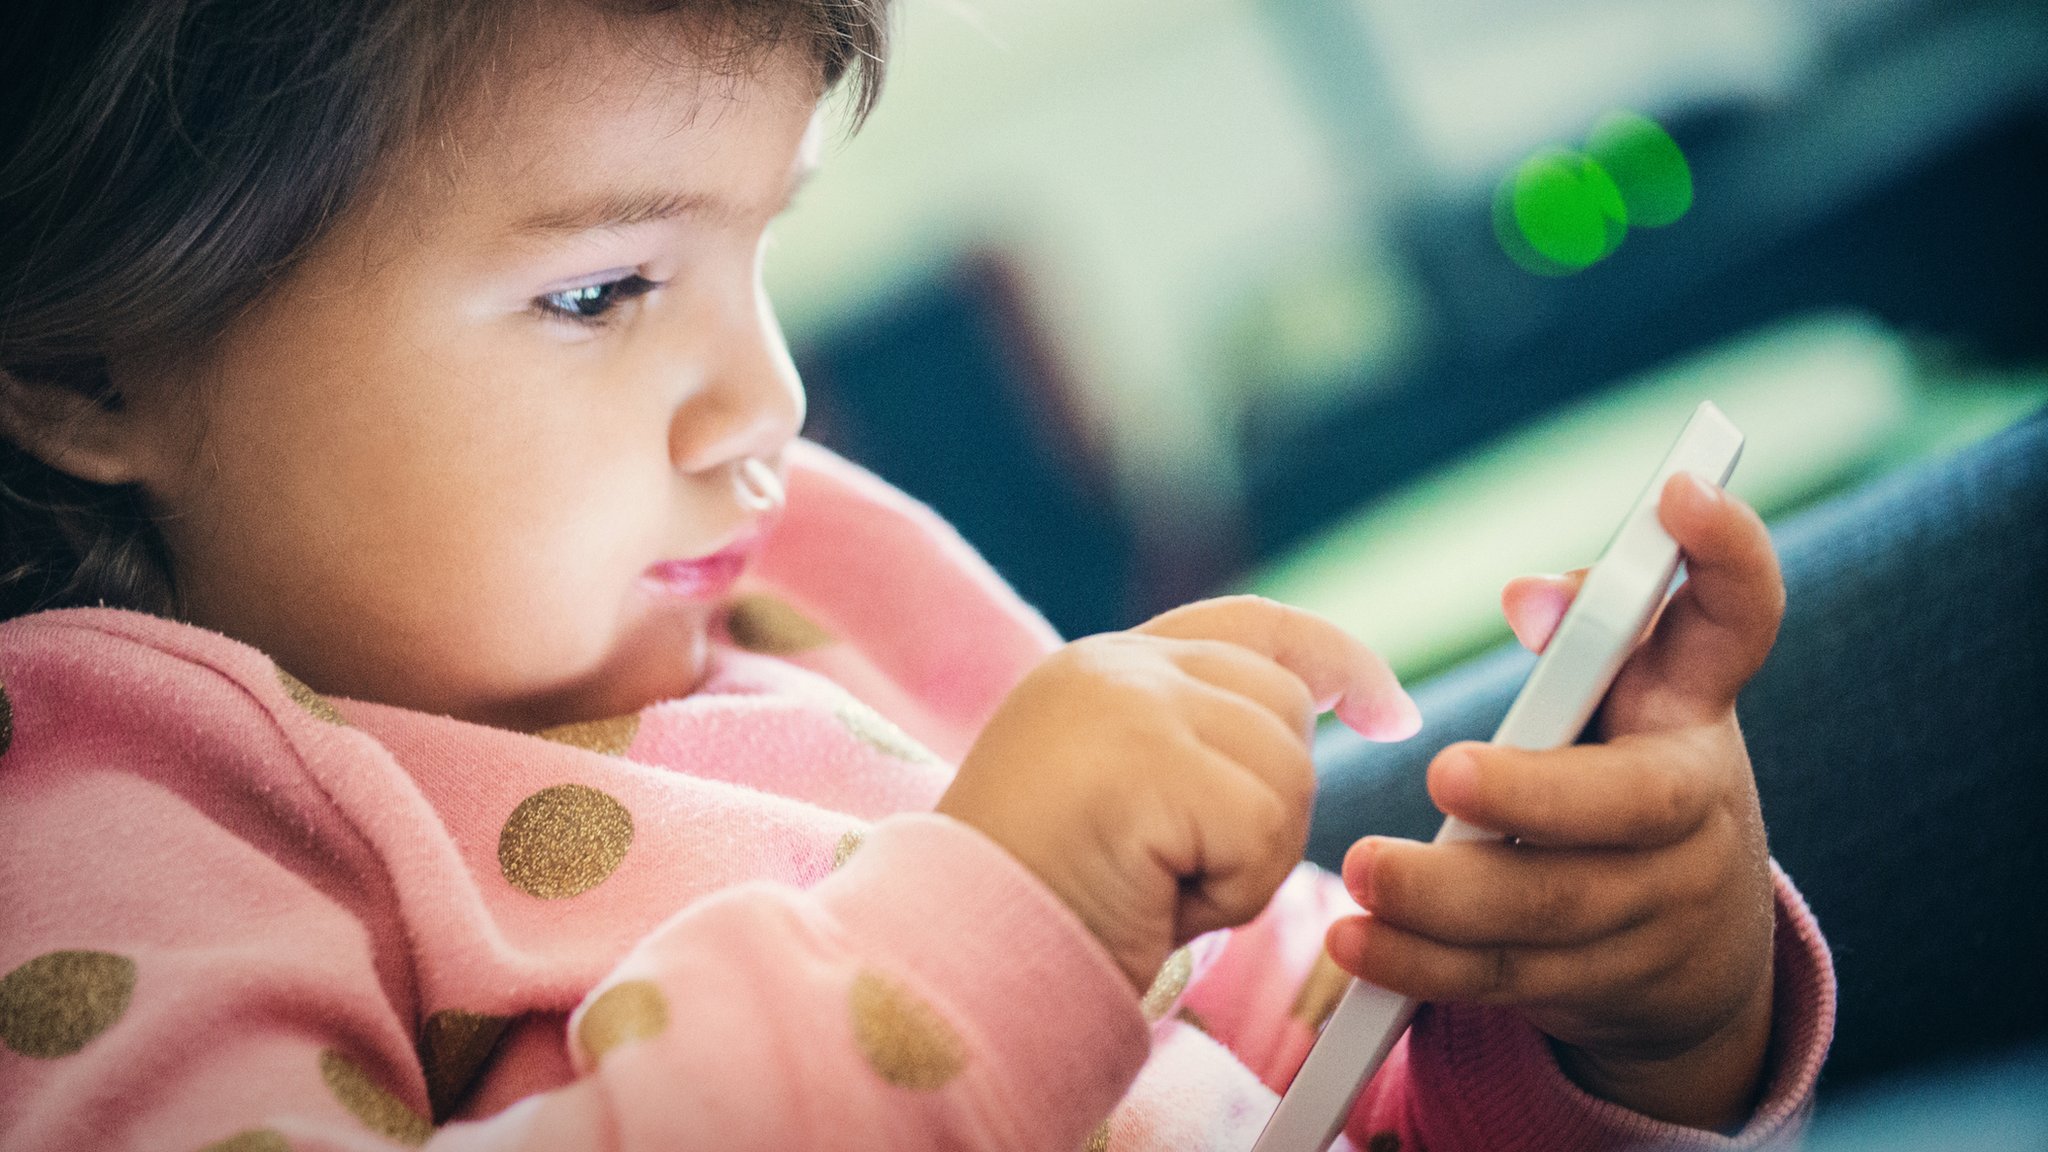 Crianças no celular: quanto tempo devem usar e 7 sinais de excesso - BBC  News Brasil